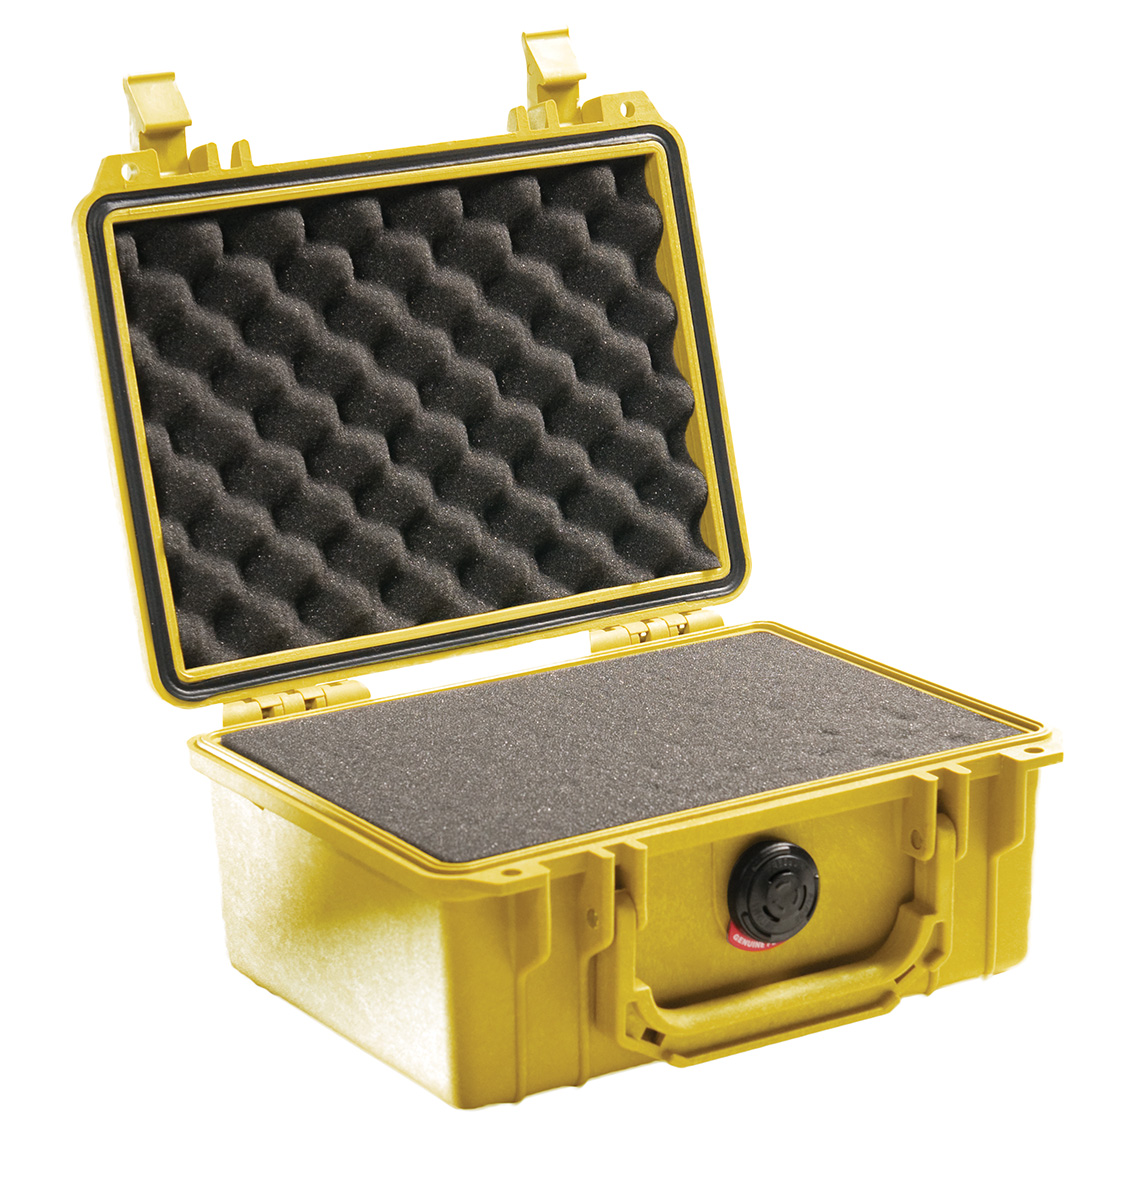 Protector Case 1150 žlutý s pěnou